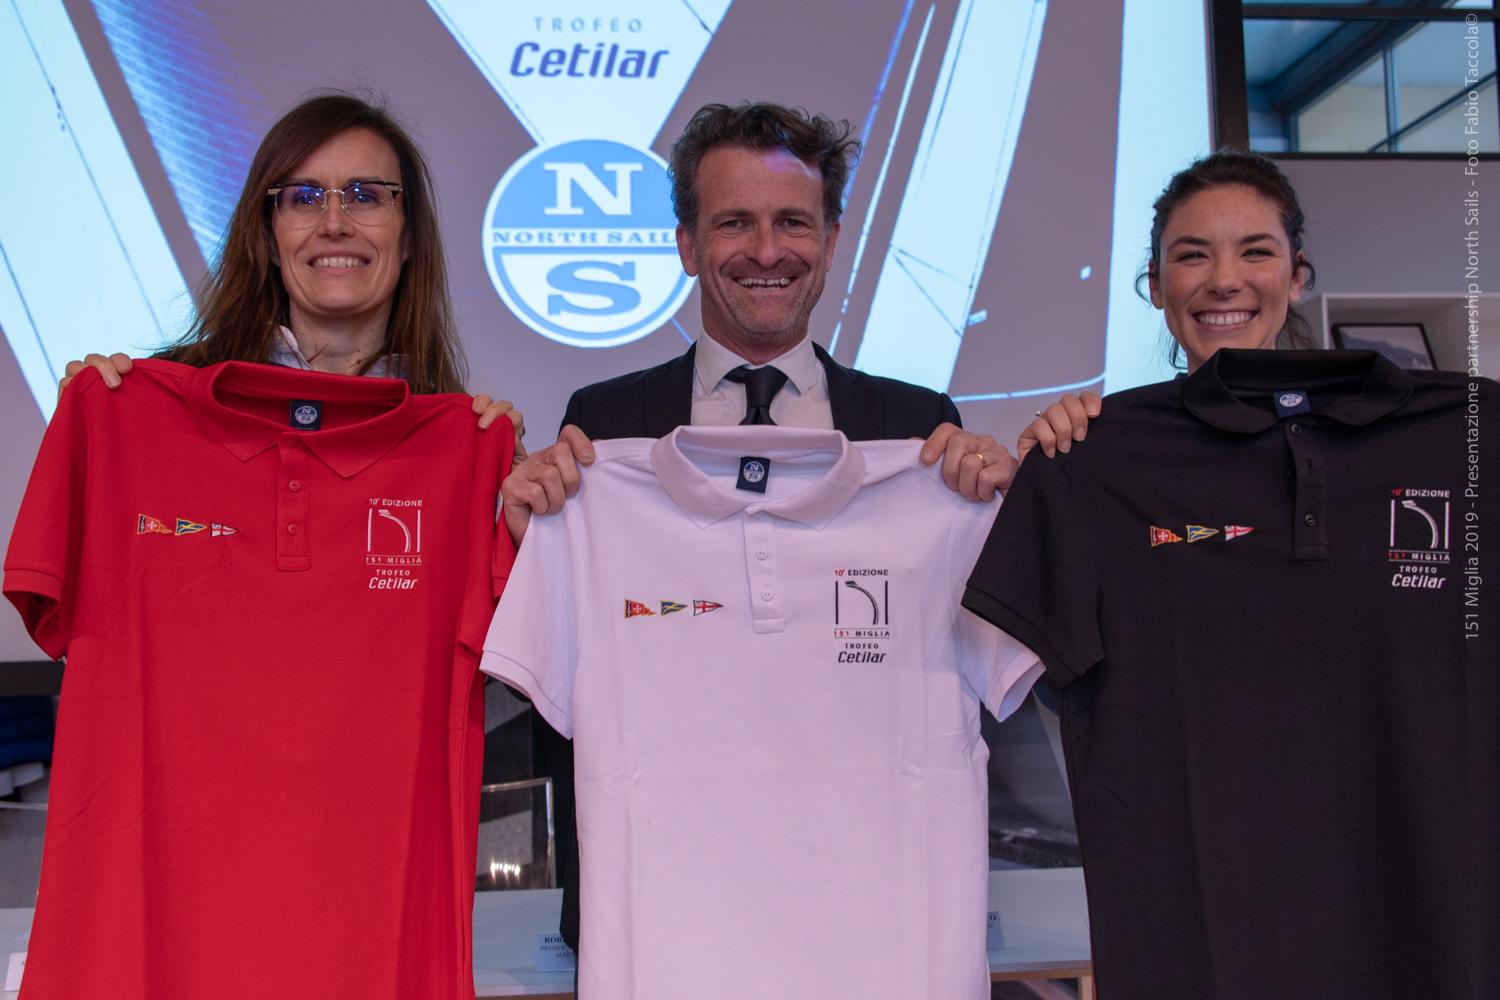 North Sails annuncia la partnership con 151 Miglia-Trofeo Cetilar